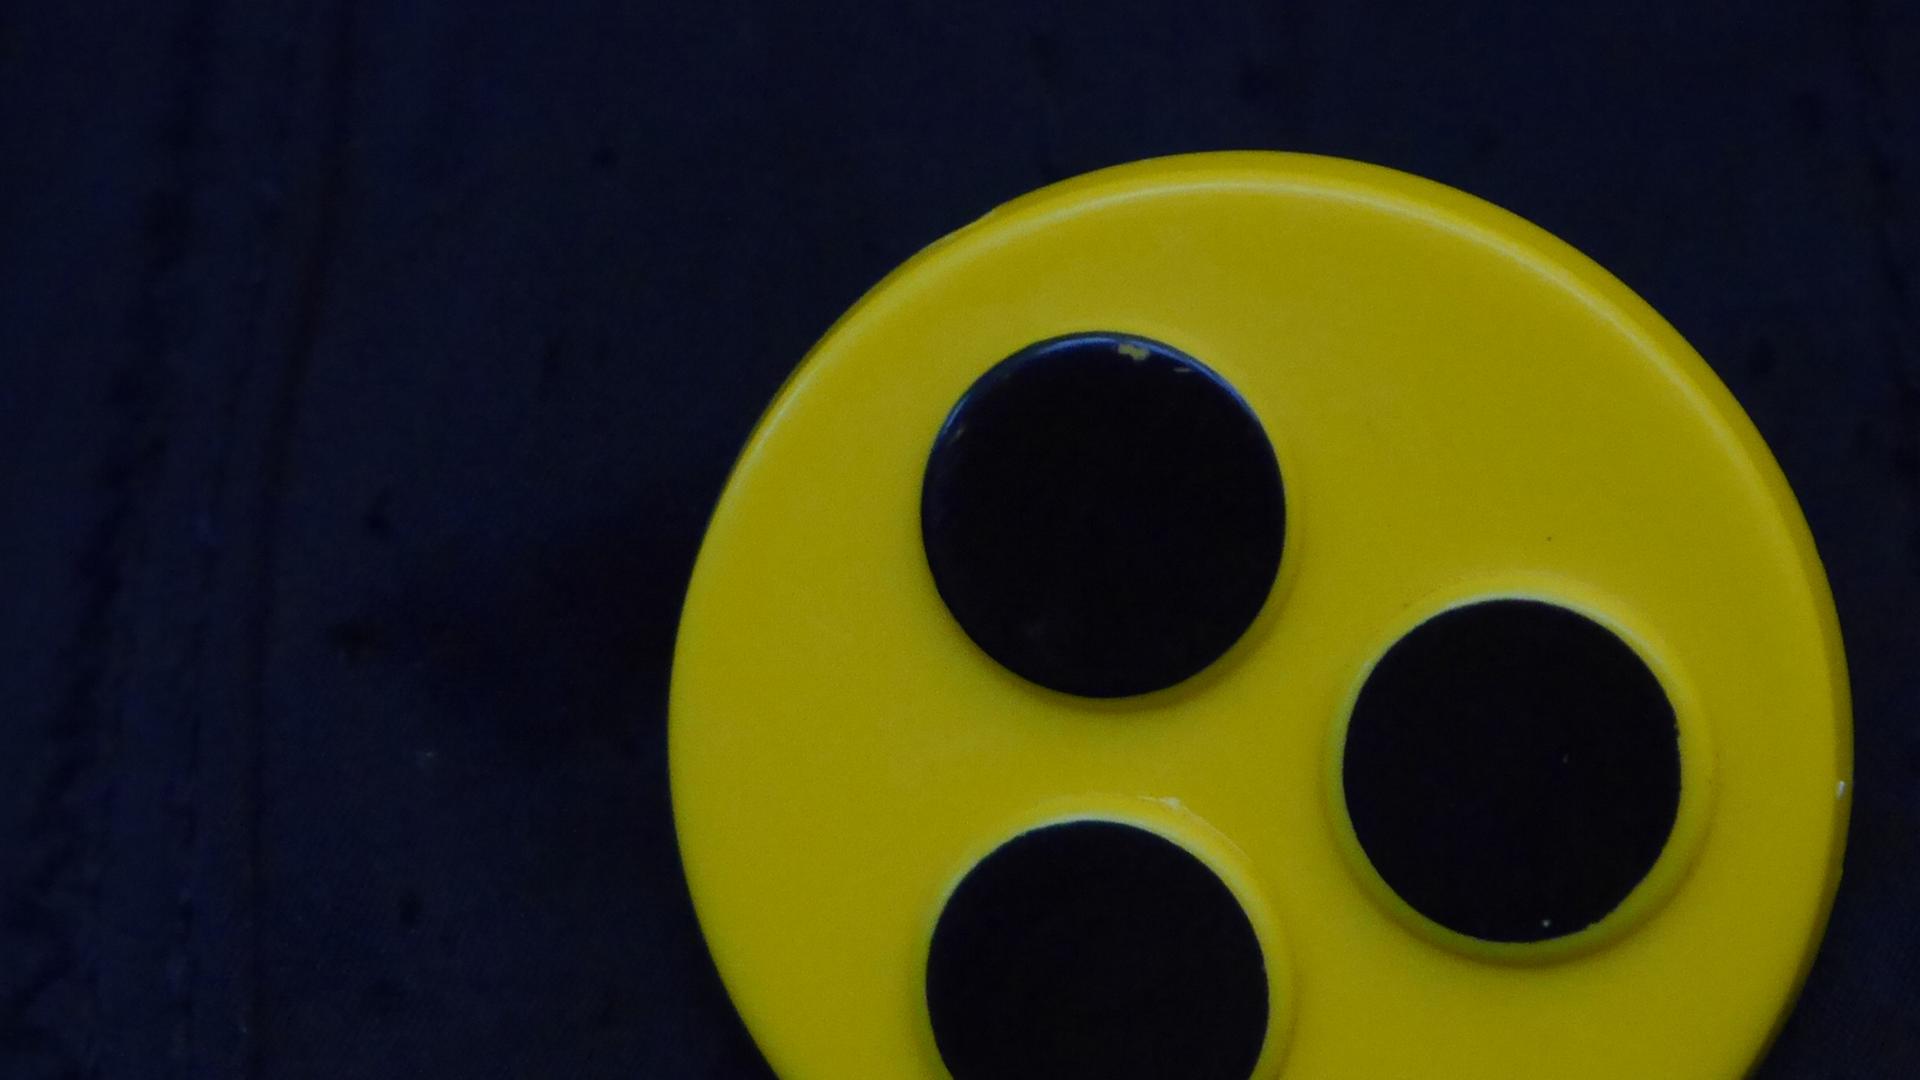 Ein Blindenbutton: Drei schwarze Punkte auf gelbem Kreis.